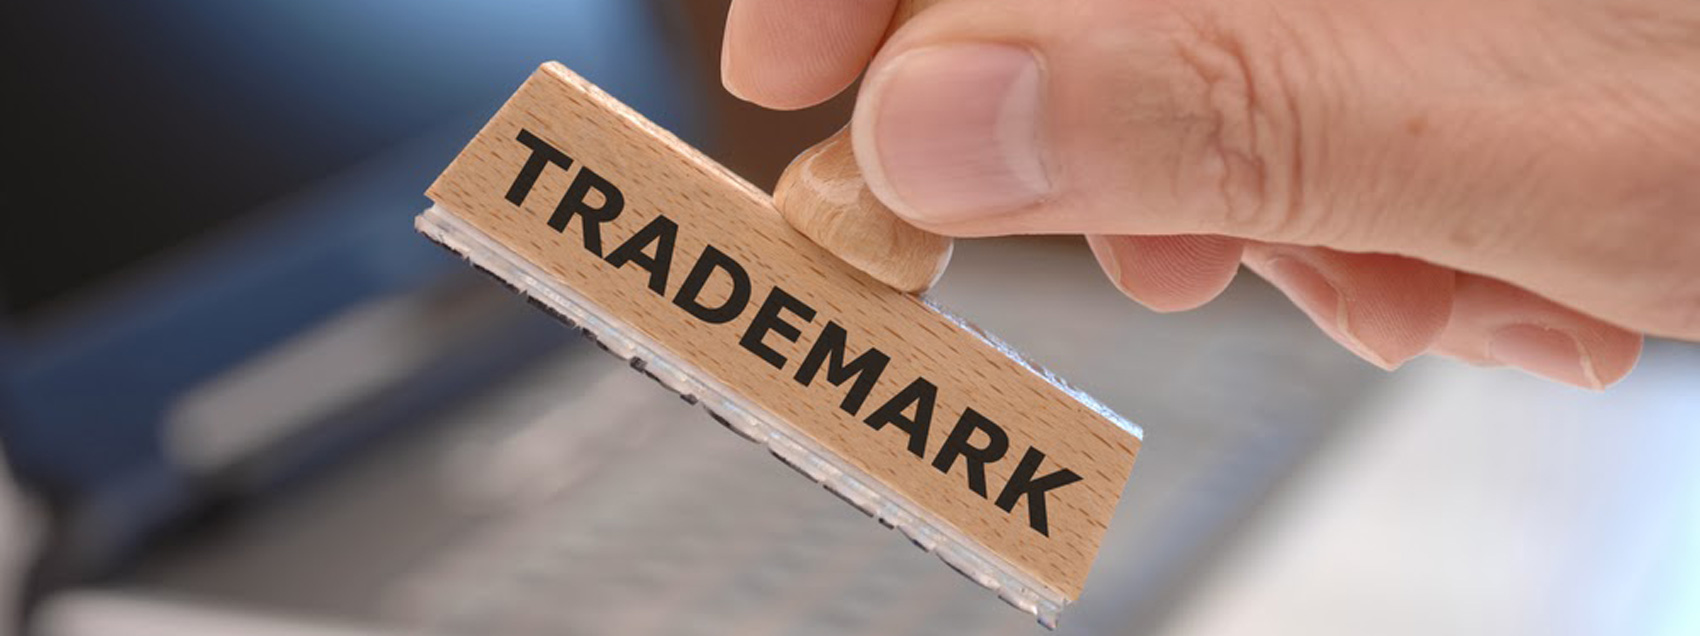 trademark registration in armenia